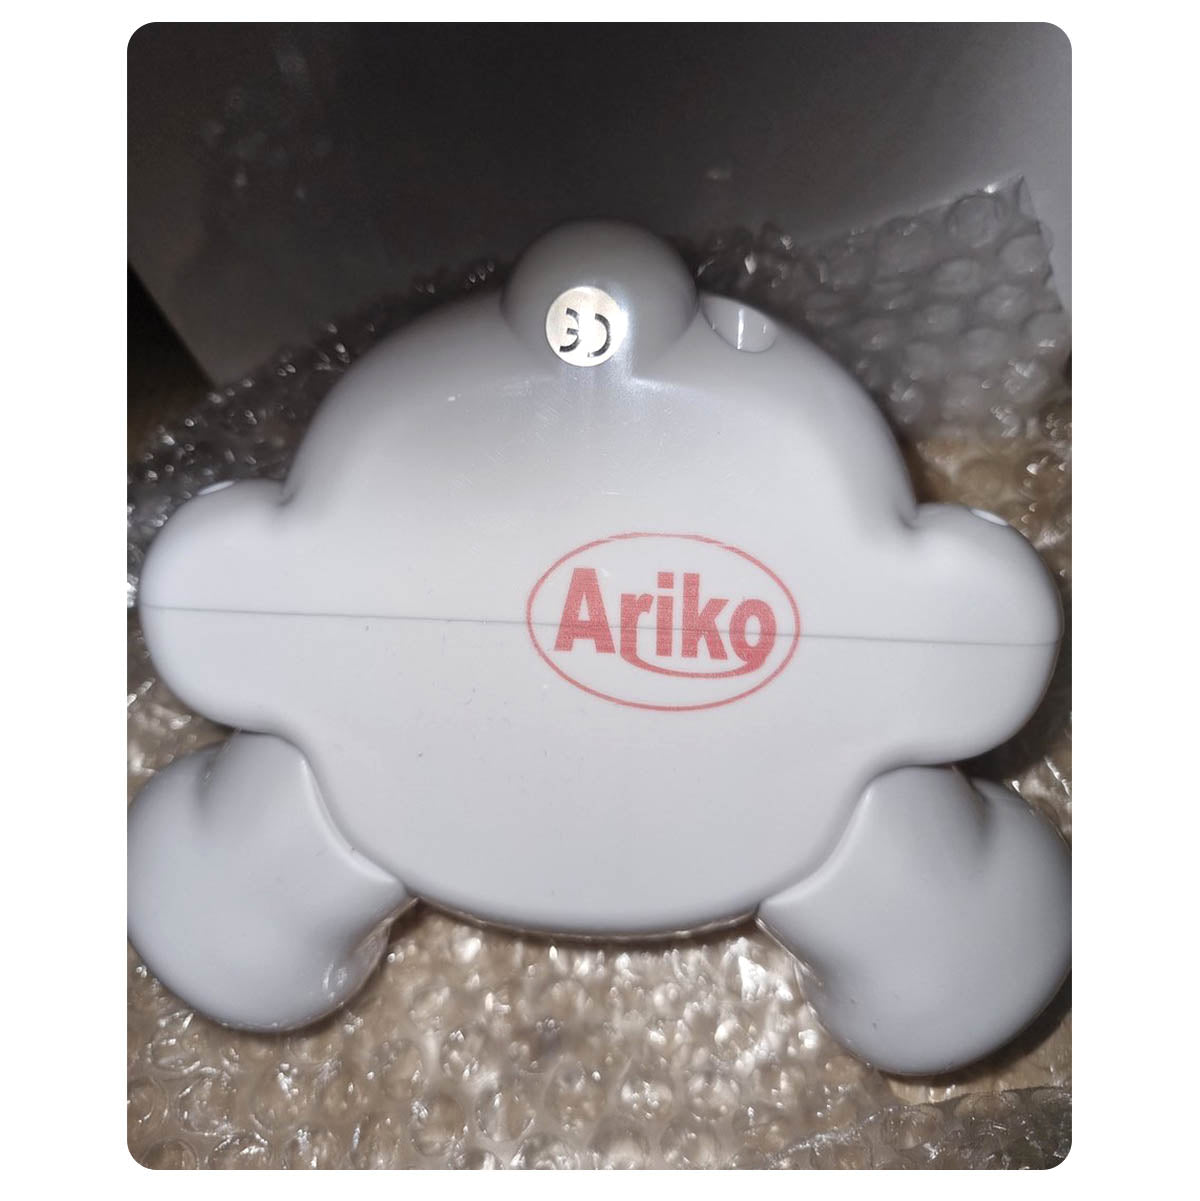 Ariko XL Beer Tafellamp Kinderkamer Babykamer - Nachtlampje - LED Dimbaar - 3 Step Dim - Blauw - Teddybeer